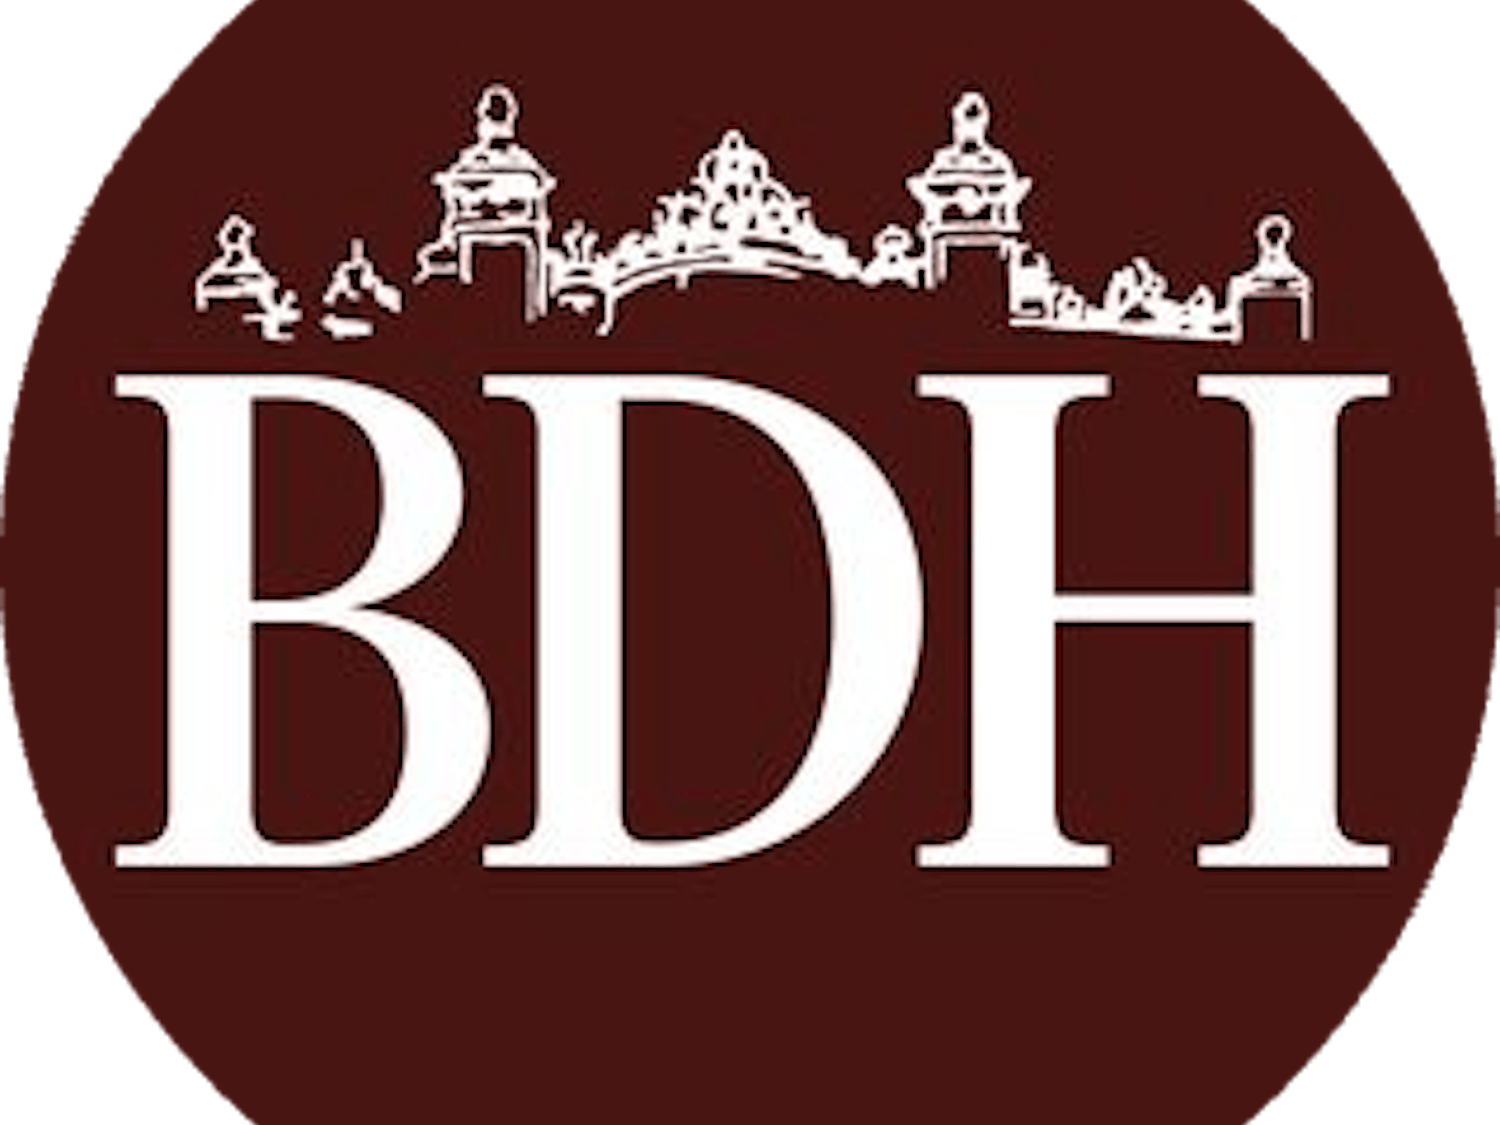 bdh logo brown-modified.png